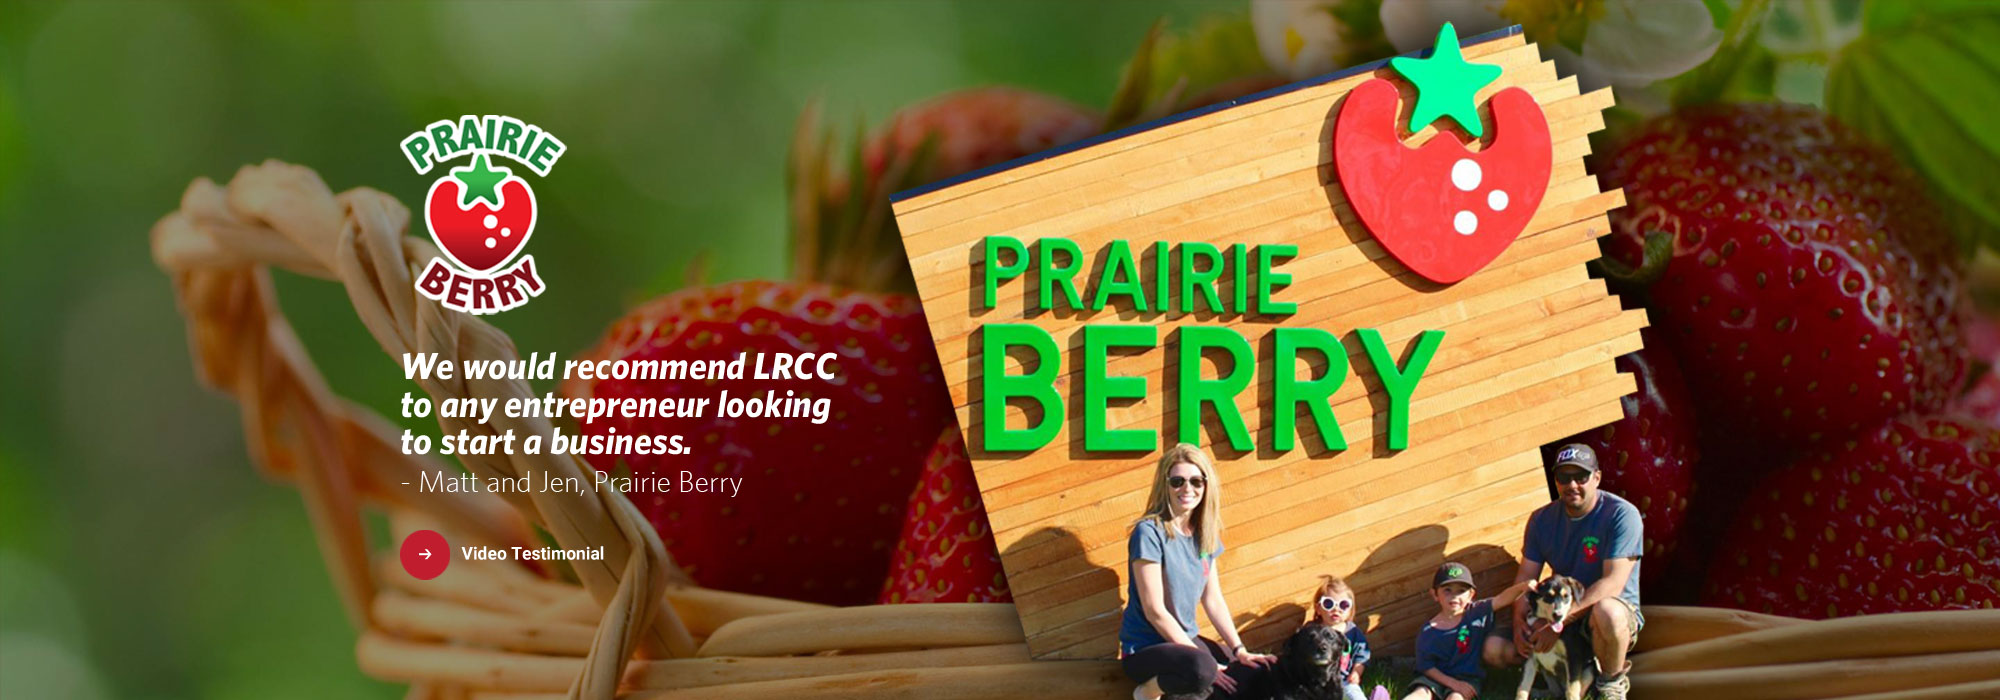 Prairie Berry